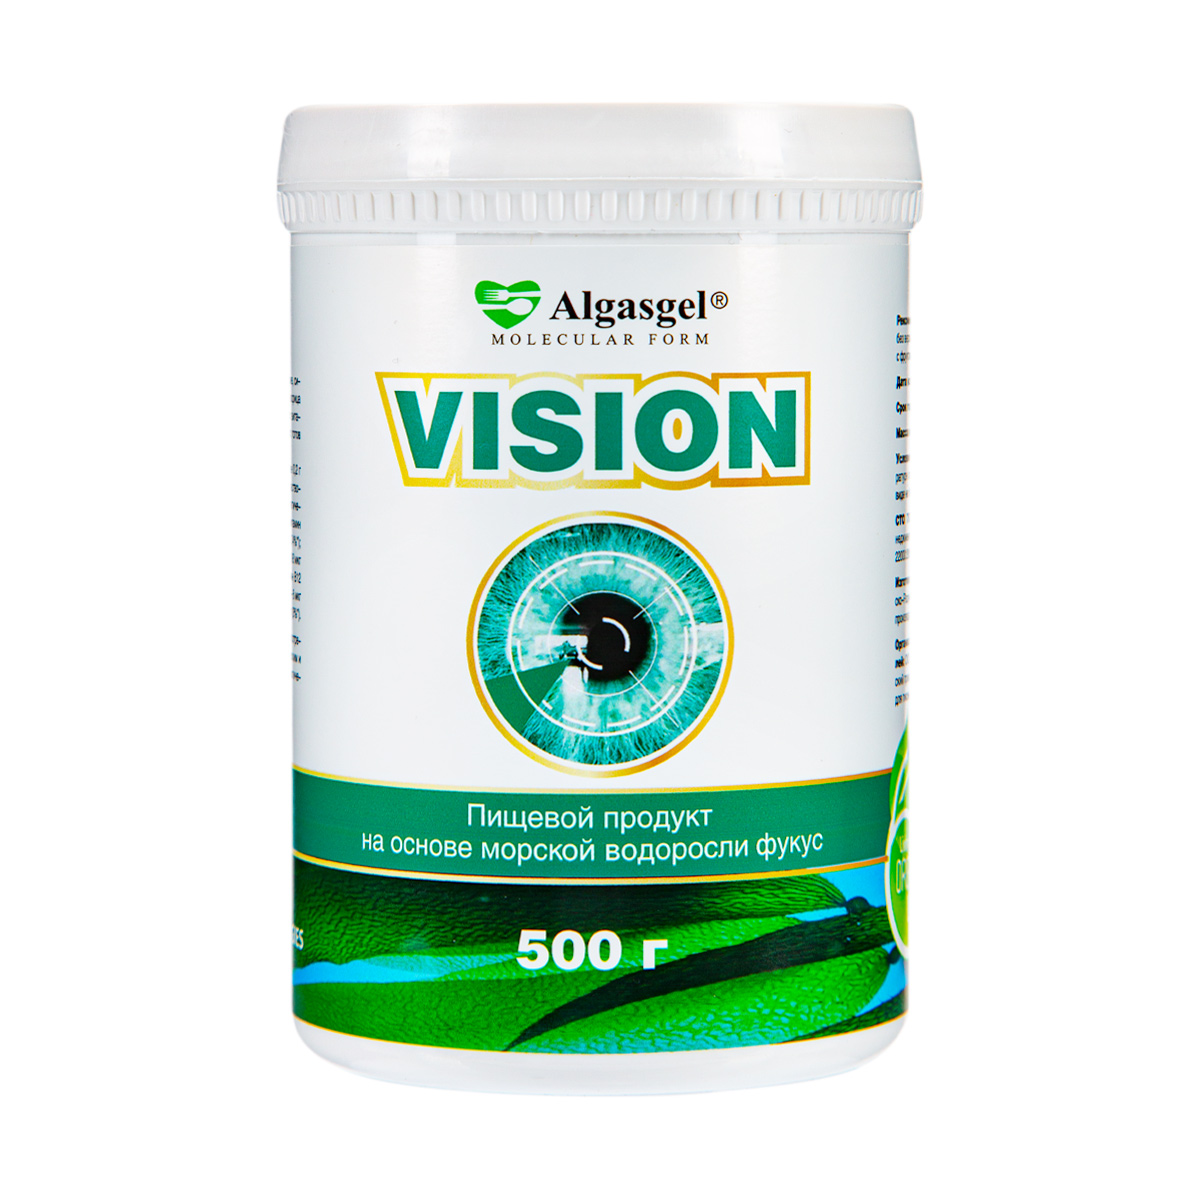 пищевой продукт algasgel vision 500 г Algasgel Vision для здоровья глаз (500 г)